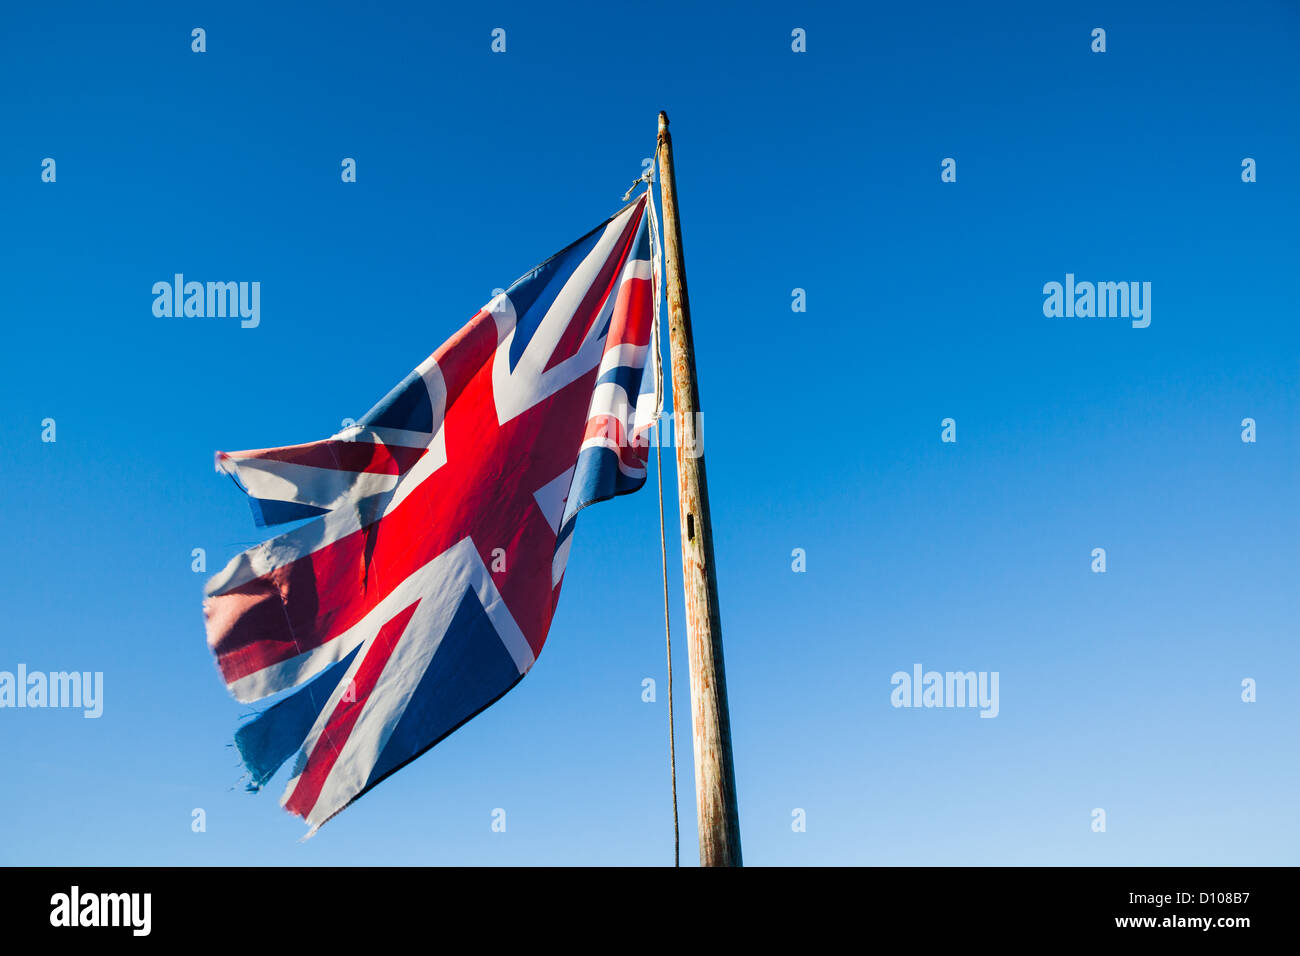 Déchiré en lambeaux, et négligées, Union Jack, le drapeau britannique, sur un mât contre un ciel bleu clair. Banque D'Images